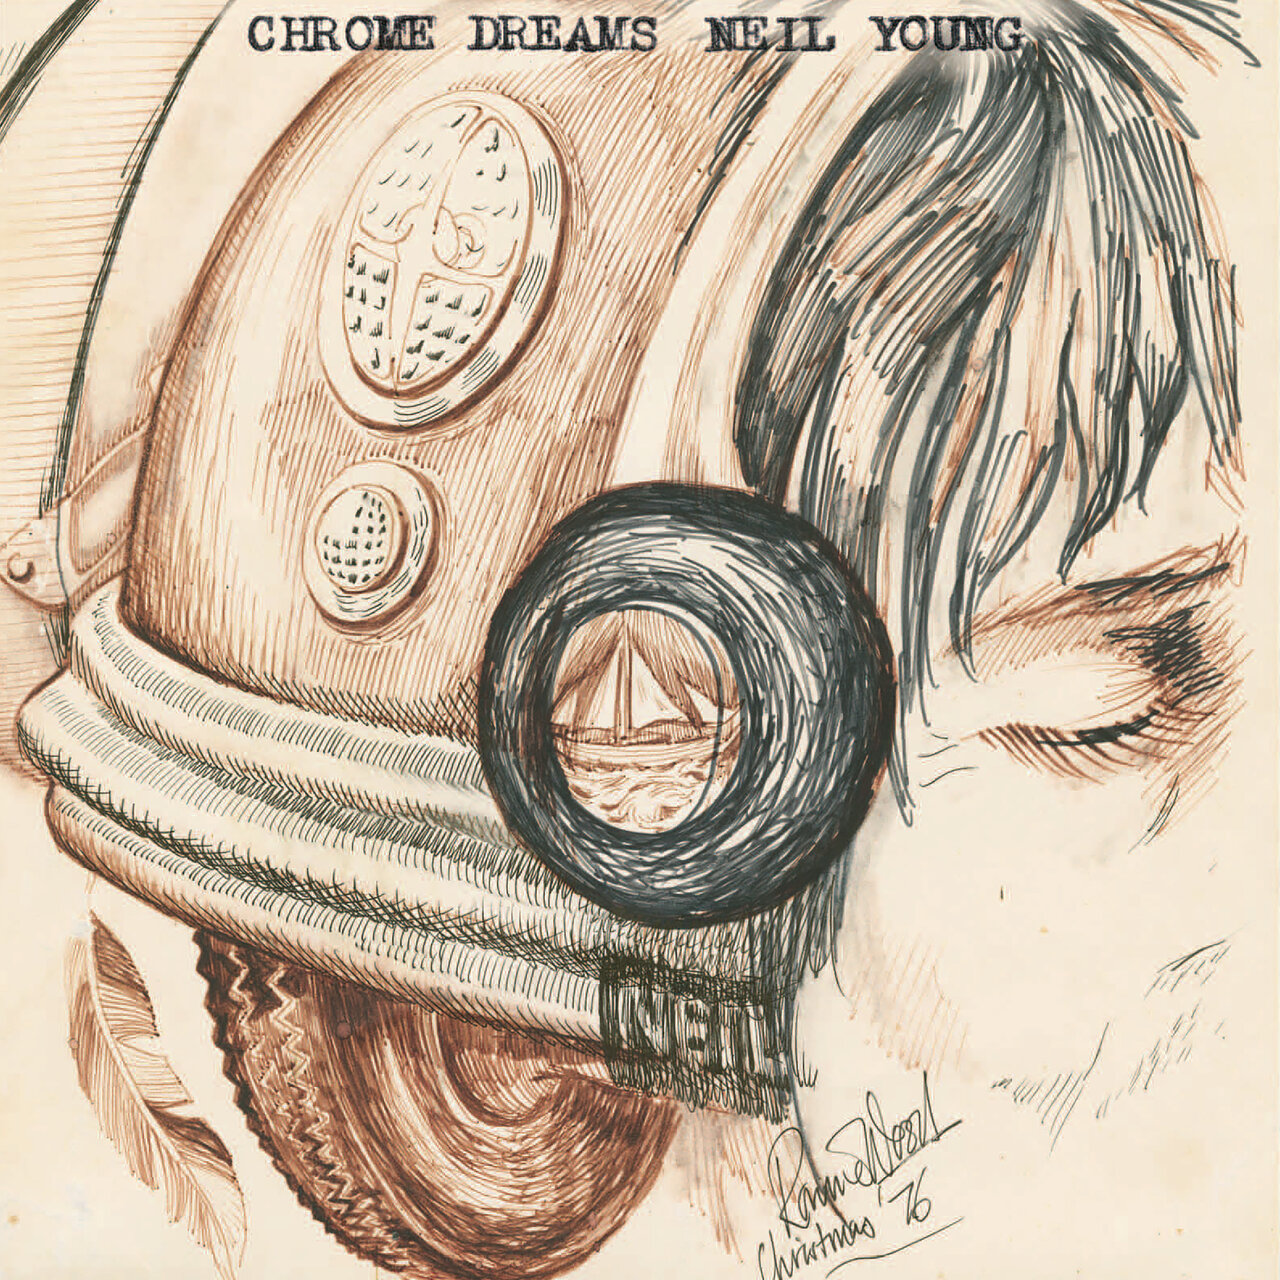 Chrome_Dreams_Neil_Young album cover